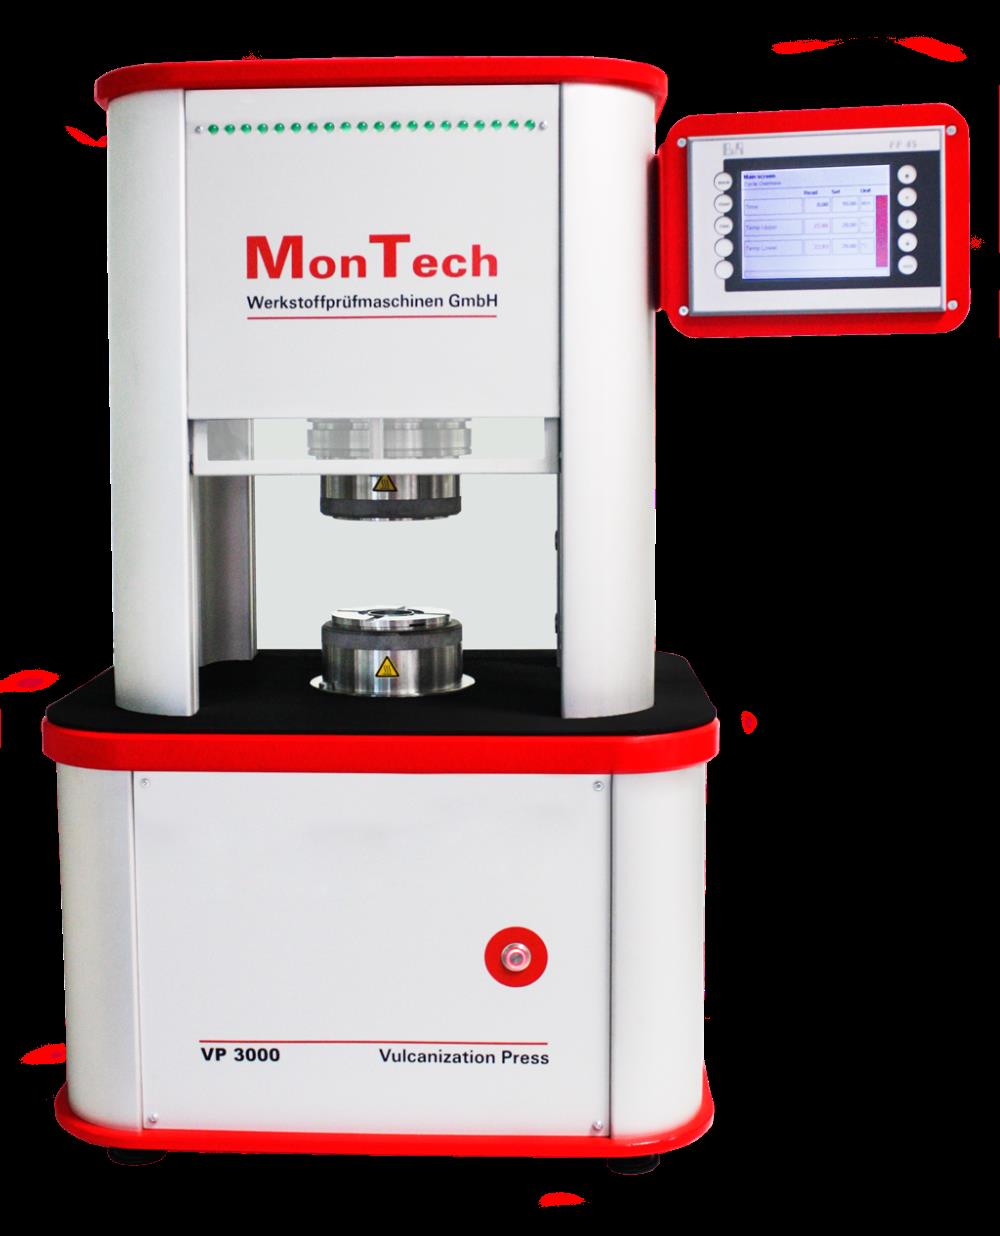 เครื่องทดสอบคุณภาพของยาง Rubber Testing Solution - Laboratory press,เครื่องทดสอบคุณภาพของยาง Rubber Testing Solution - Laboratory press,MonTech,Instruments and Controls/Test Equipment